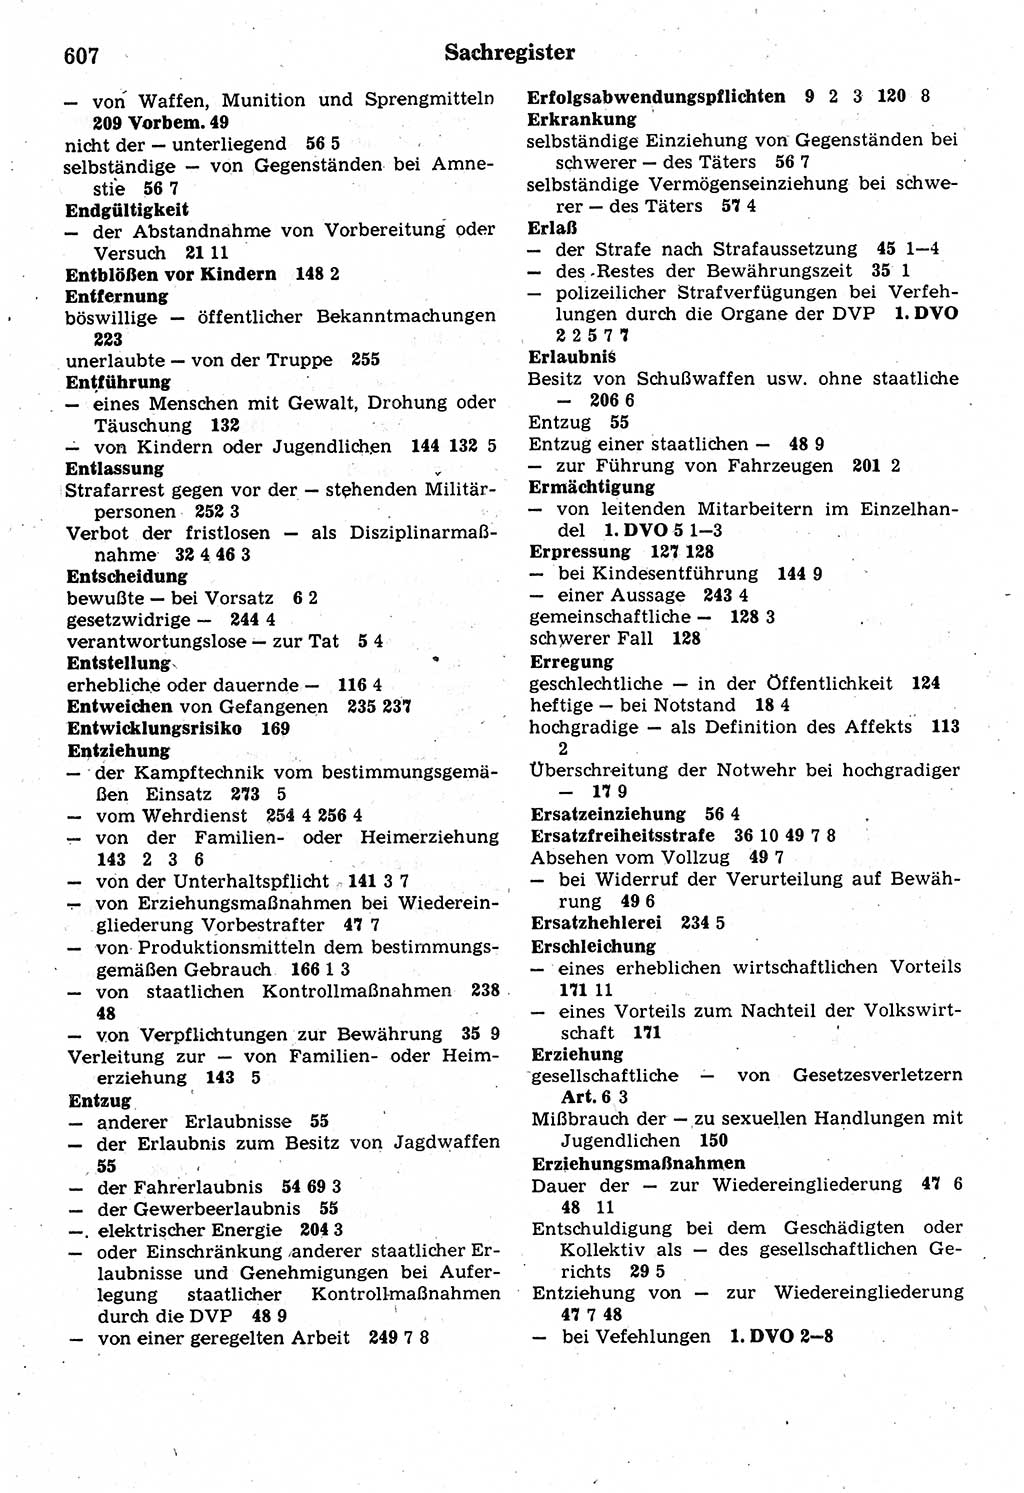 Strafrecht der Deutschen Demokratischen Republik (DDR), Kommentar zum Strafgesetzbuch (StGB) 1987, Seite 607 (Strafr. DDR Komm. StGB 1987, S. 607)